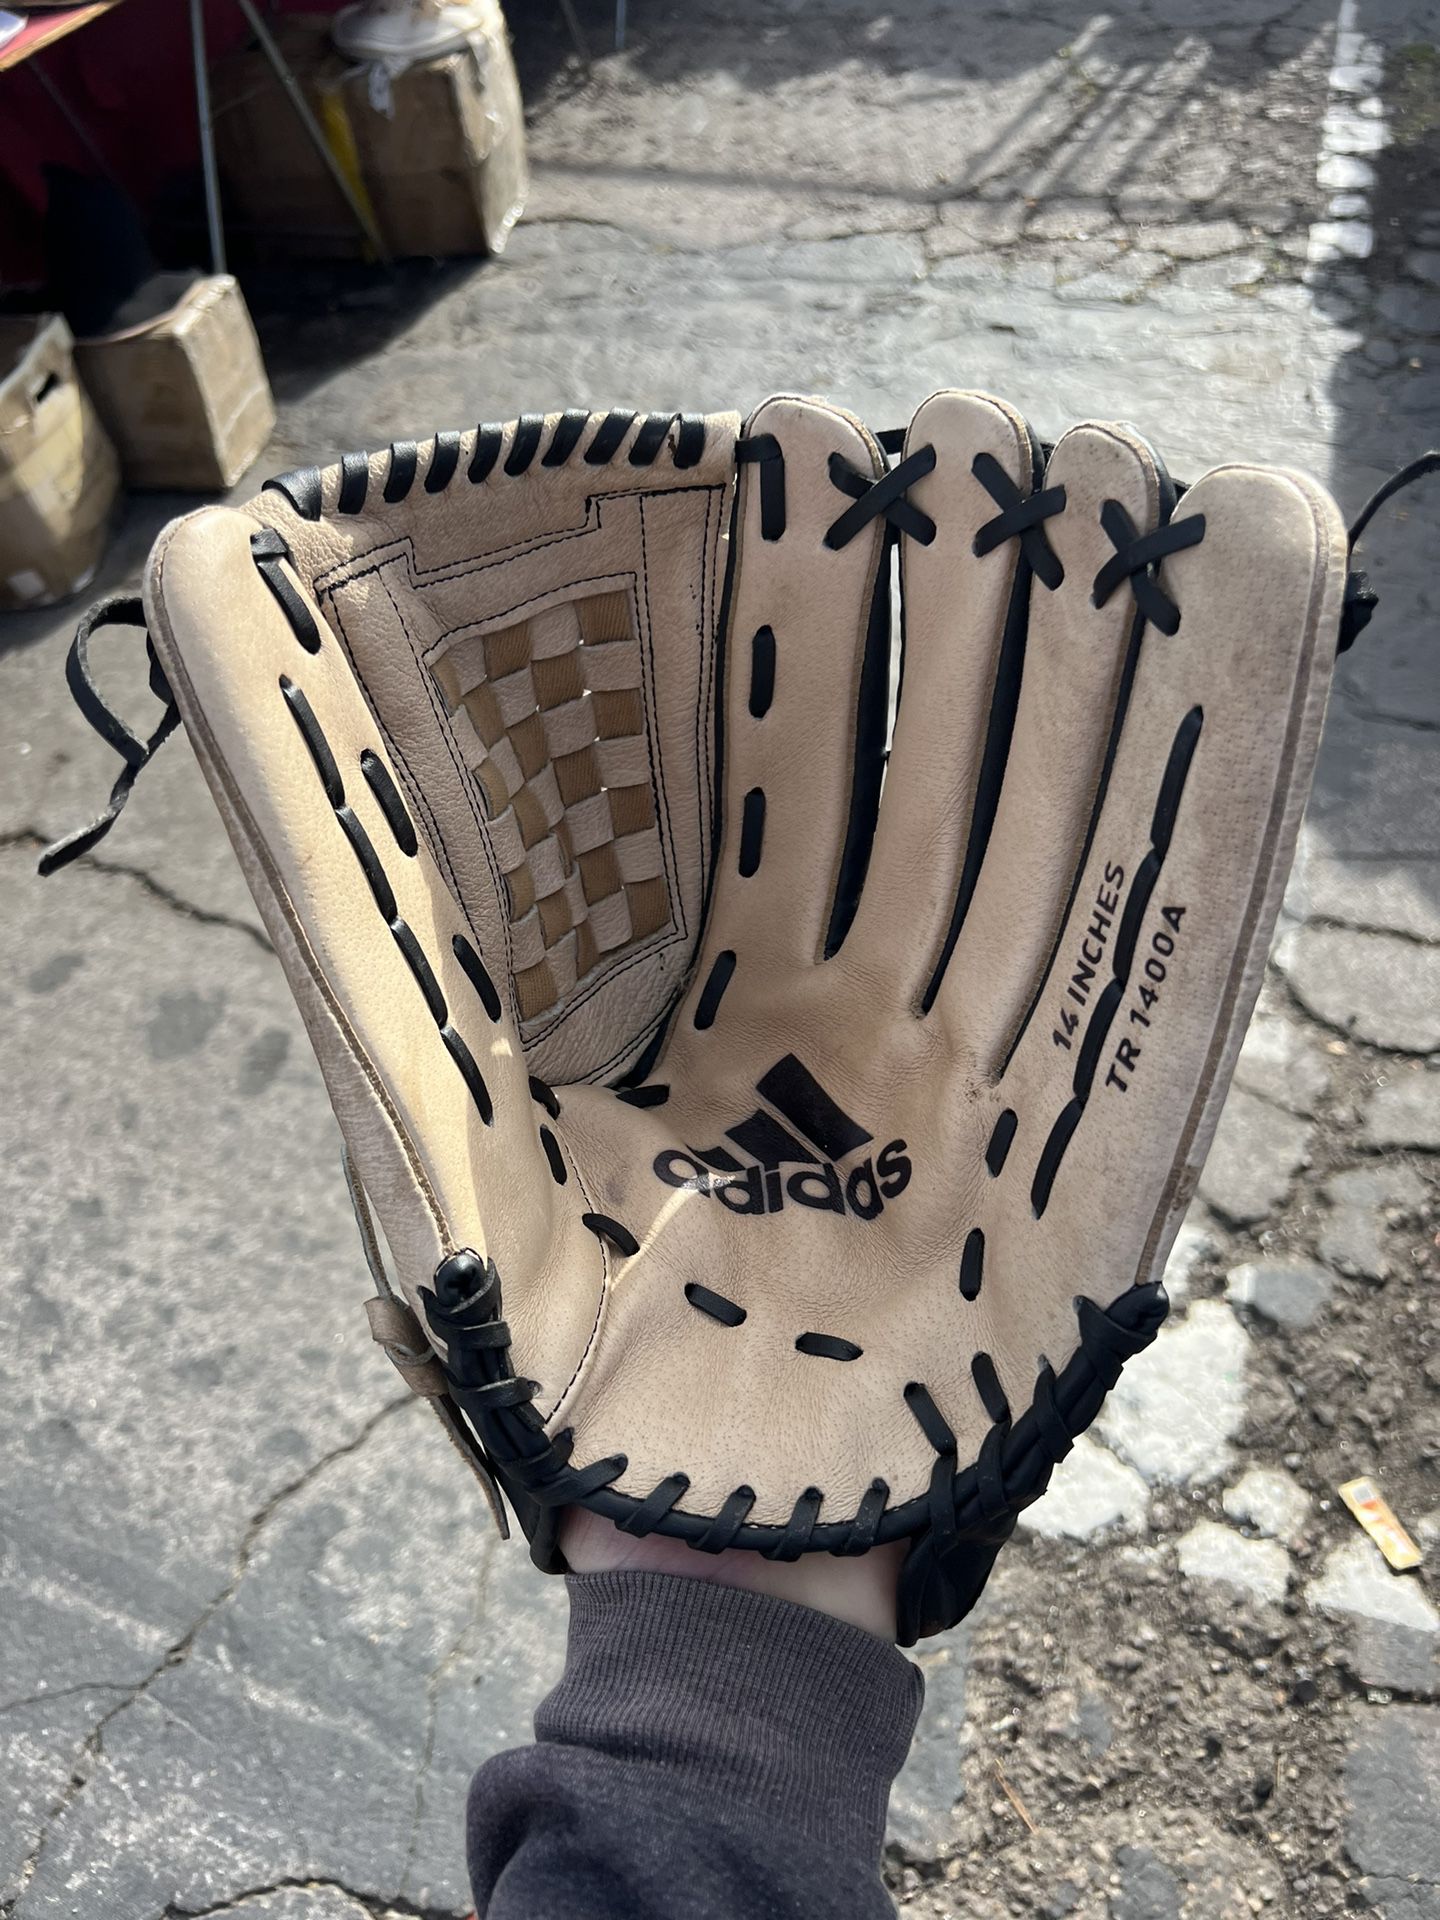 Xxl Baseball Softball Glove Outfielder Adidas 14” 